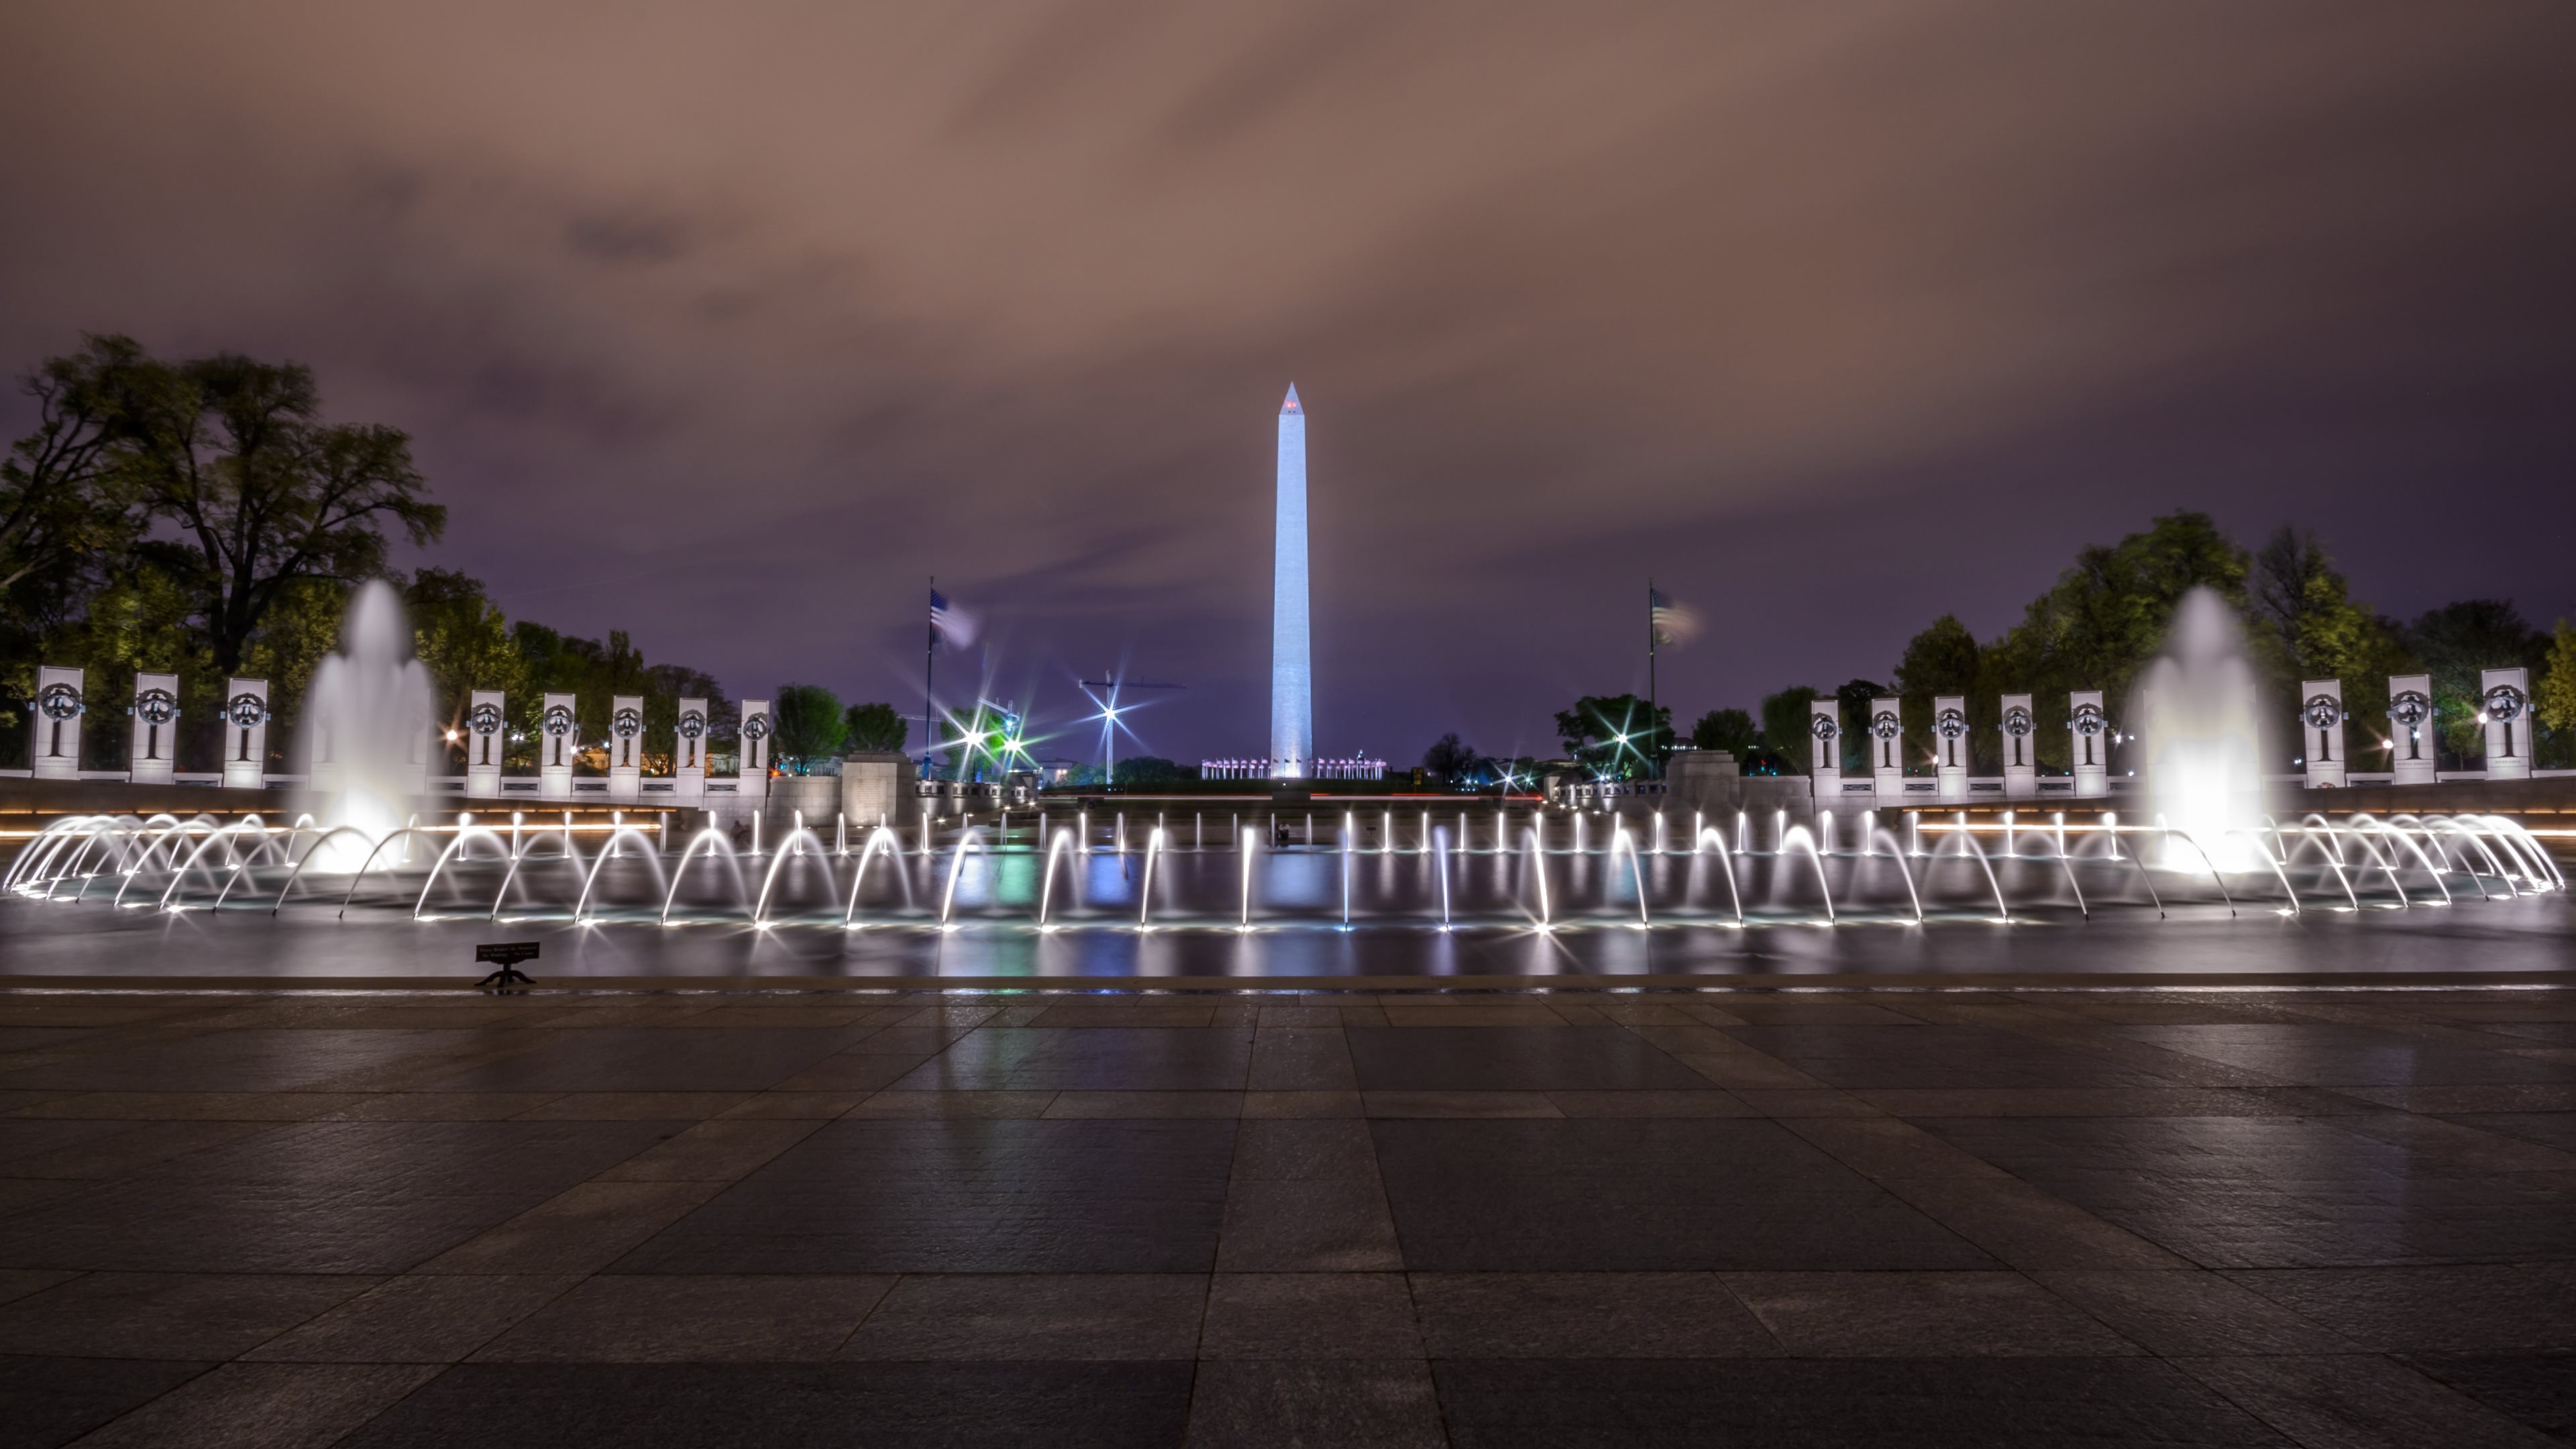 Meilleurs fonds d'écran Le Monument De Washington pour l'écran du téléphone